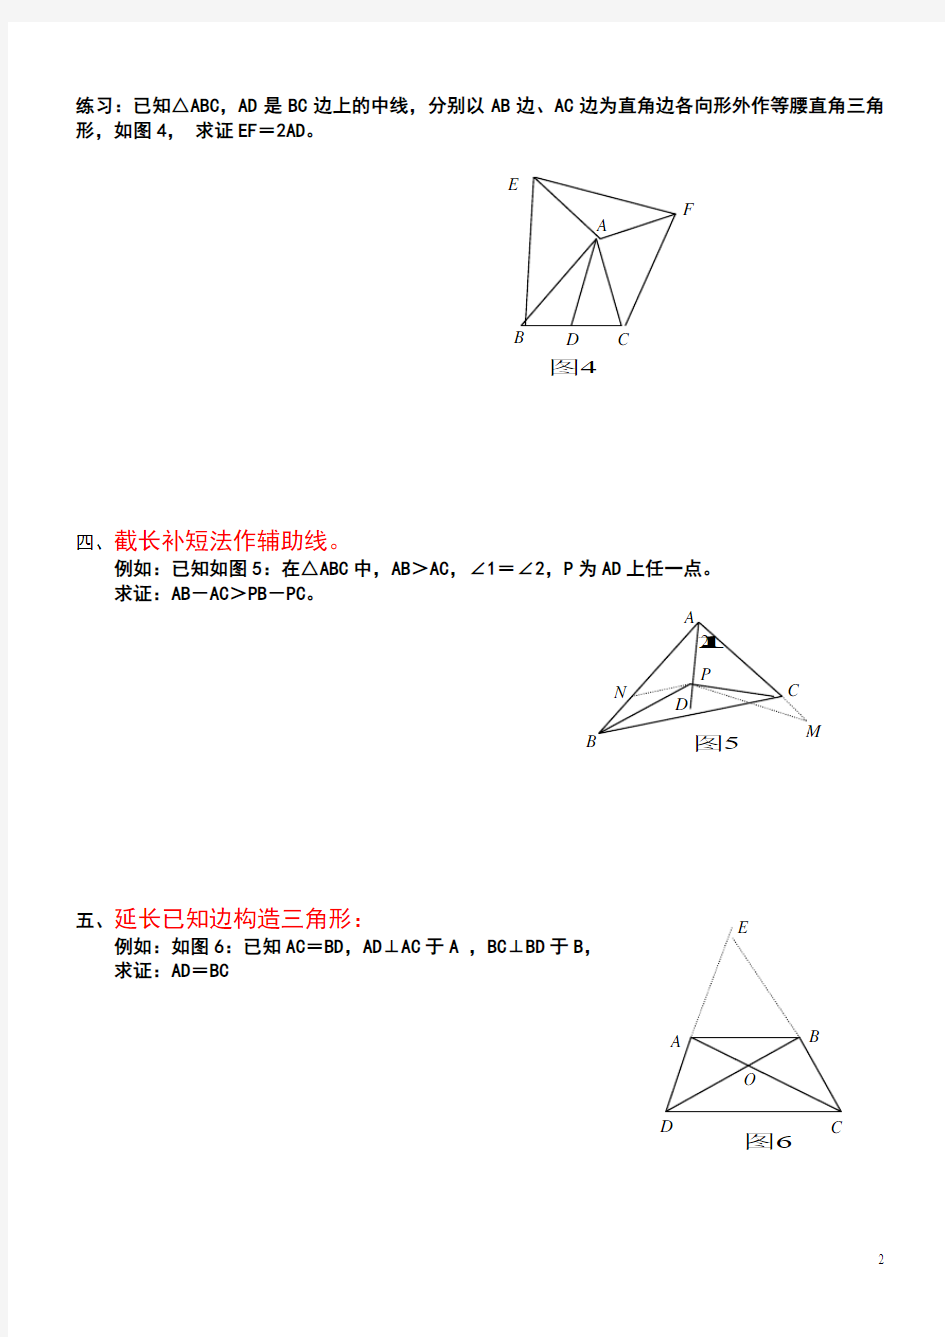 全等三角形中常见辅助线的添加方法